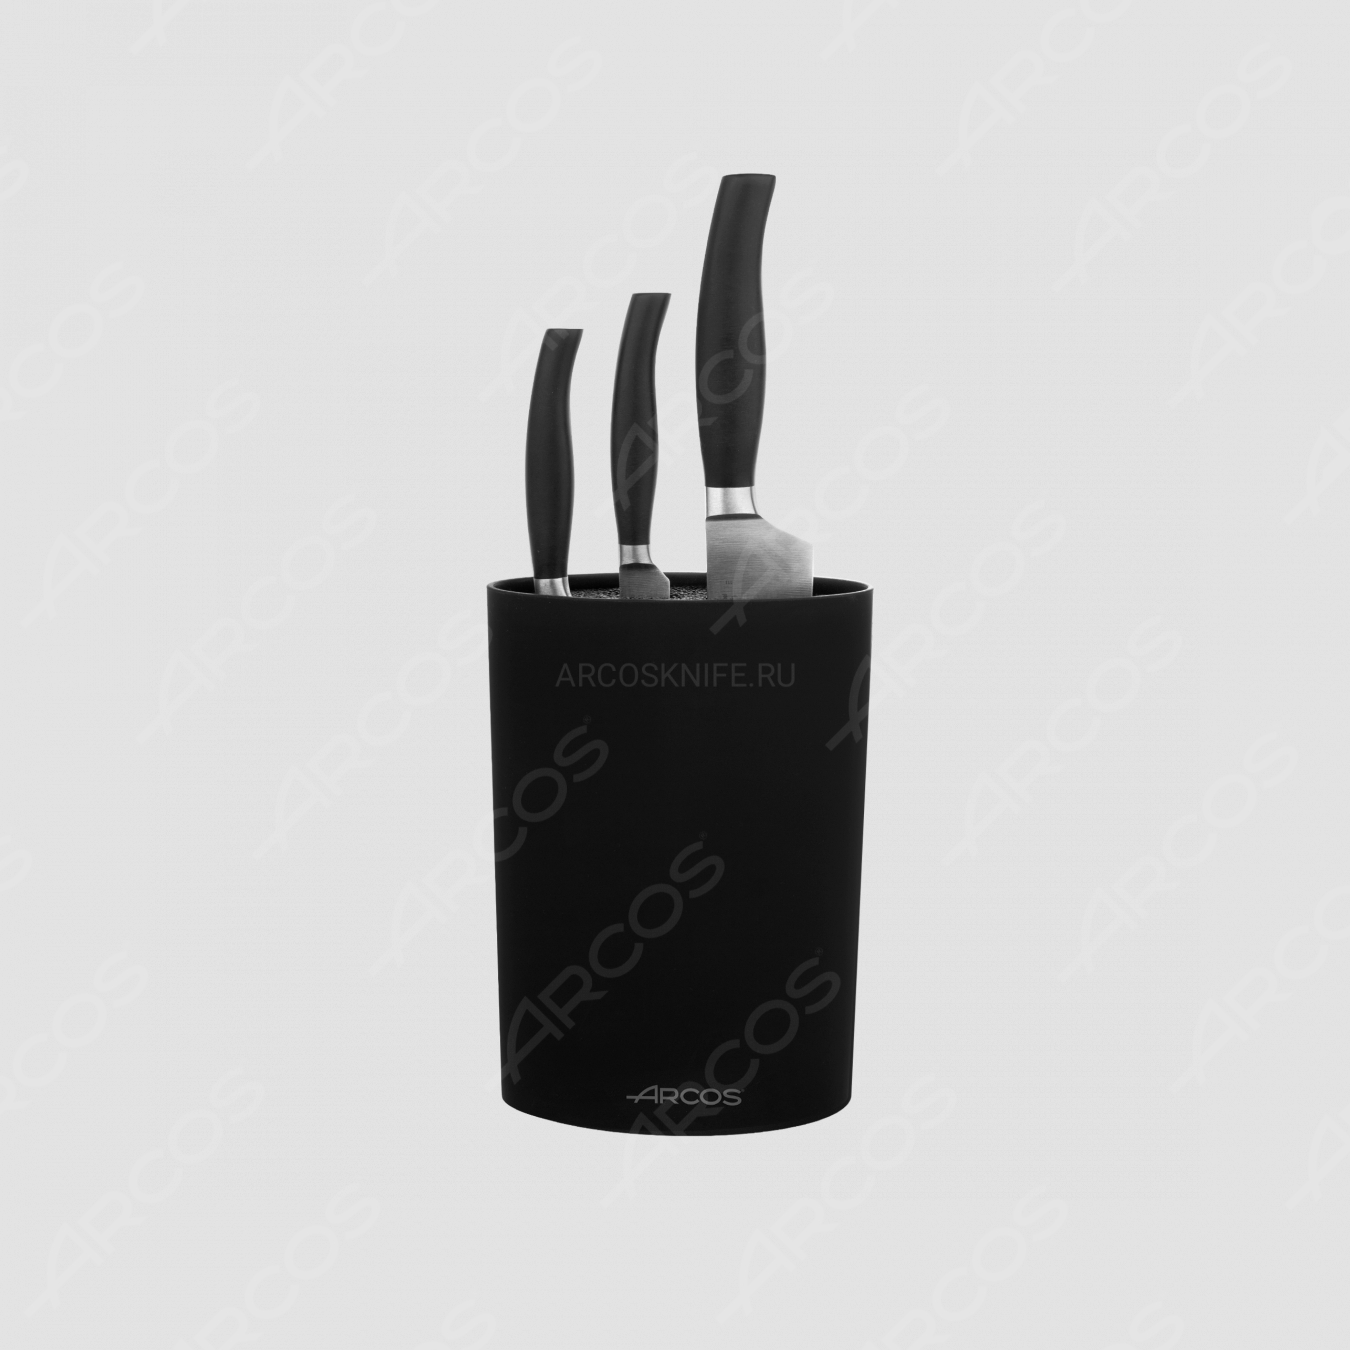 Набор из 3-х ножей с черной подставкой, серия Clara, ARCOS, Испания